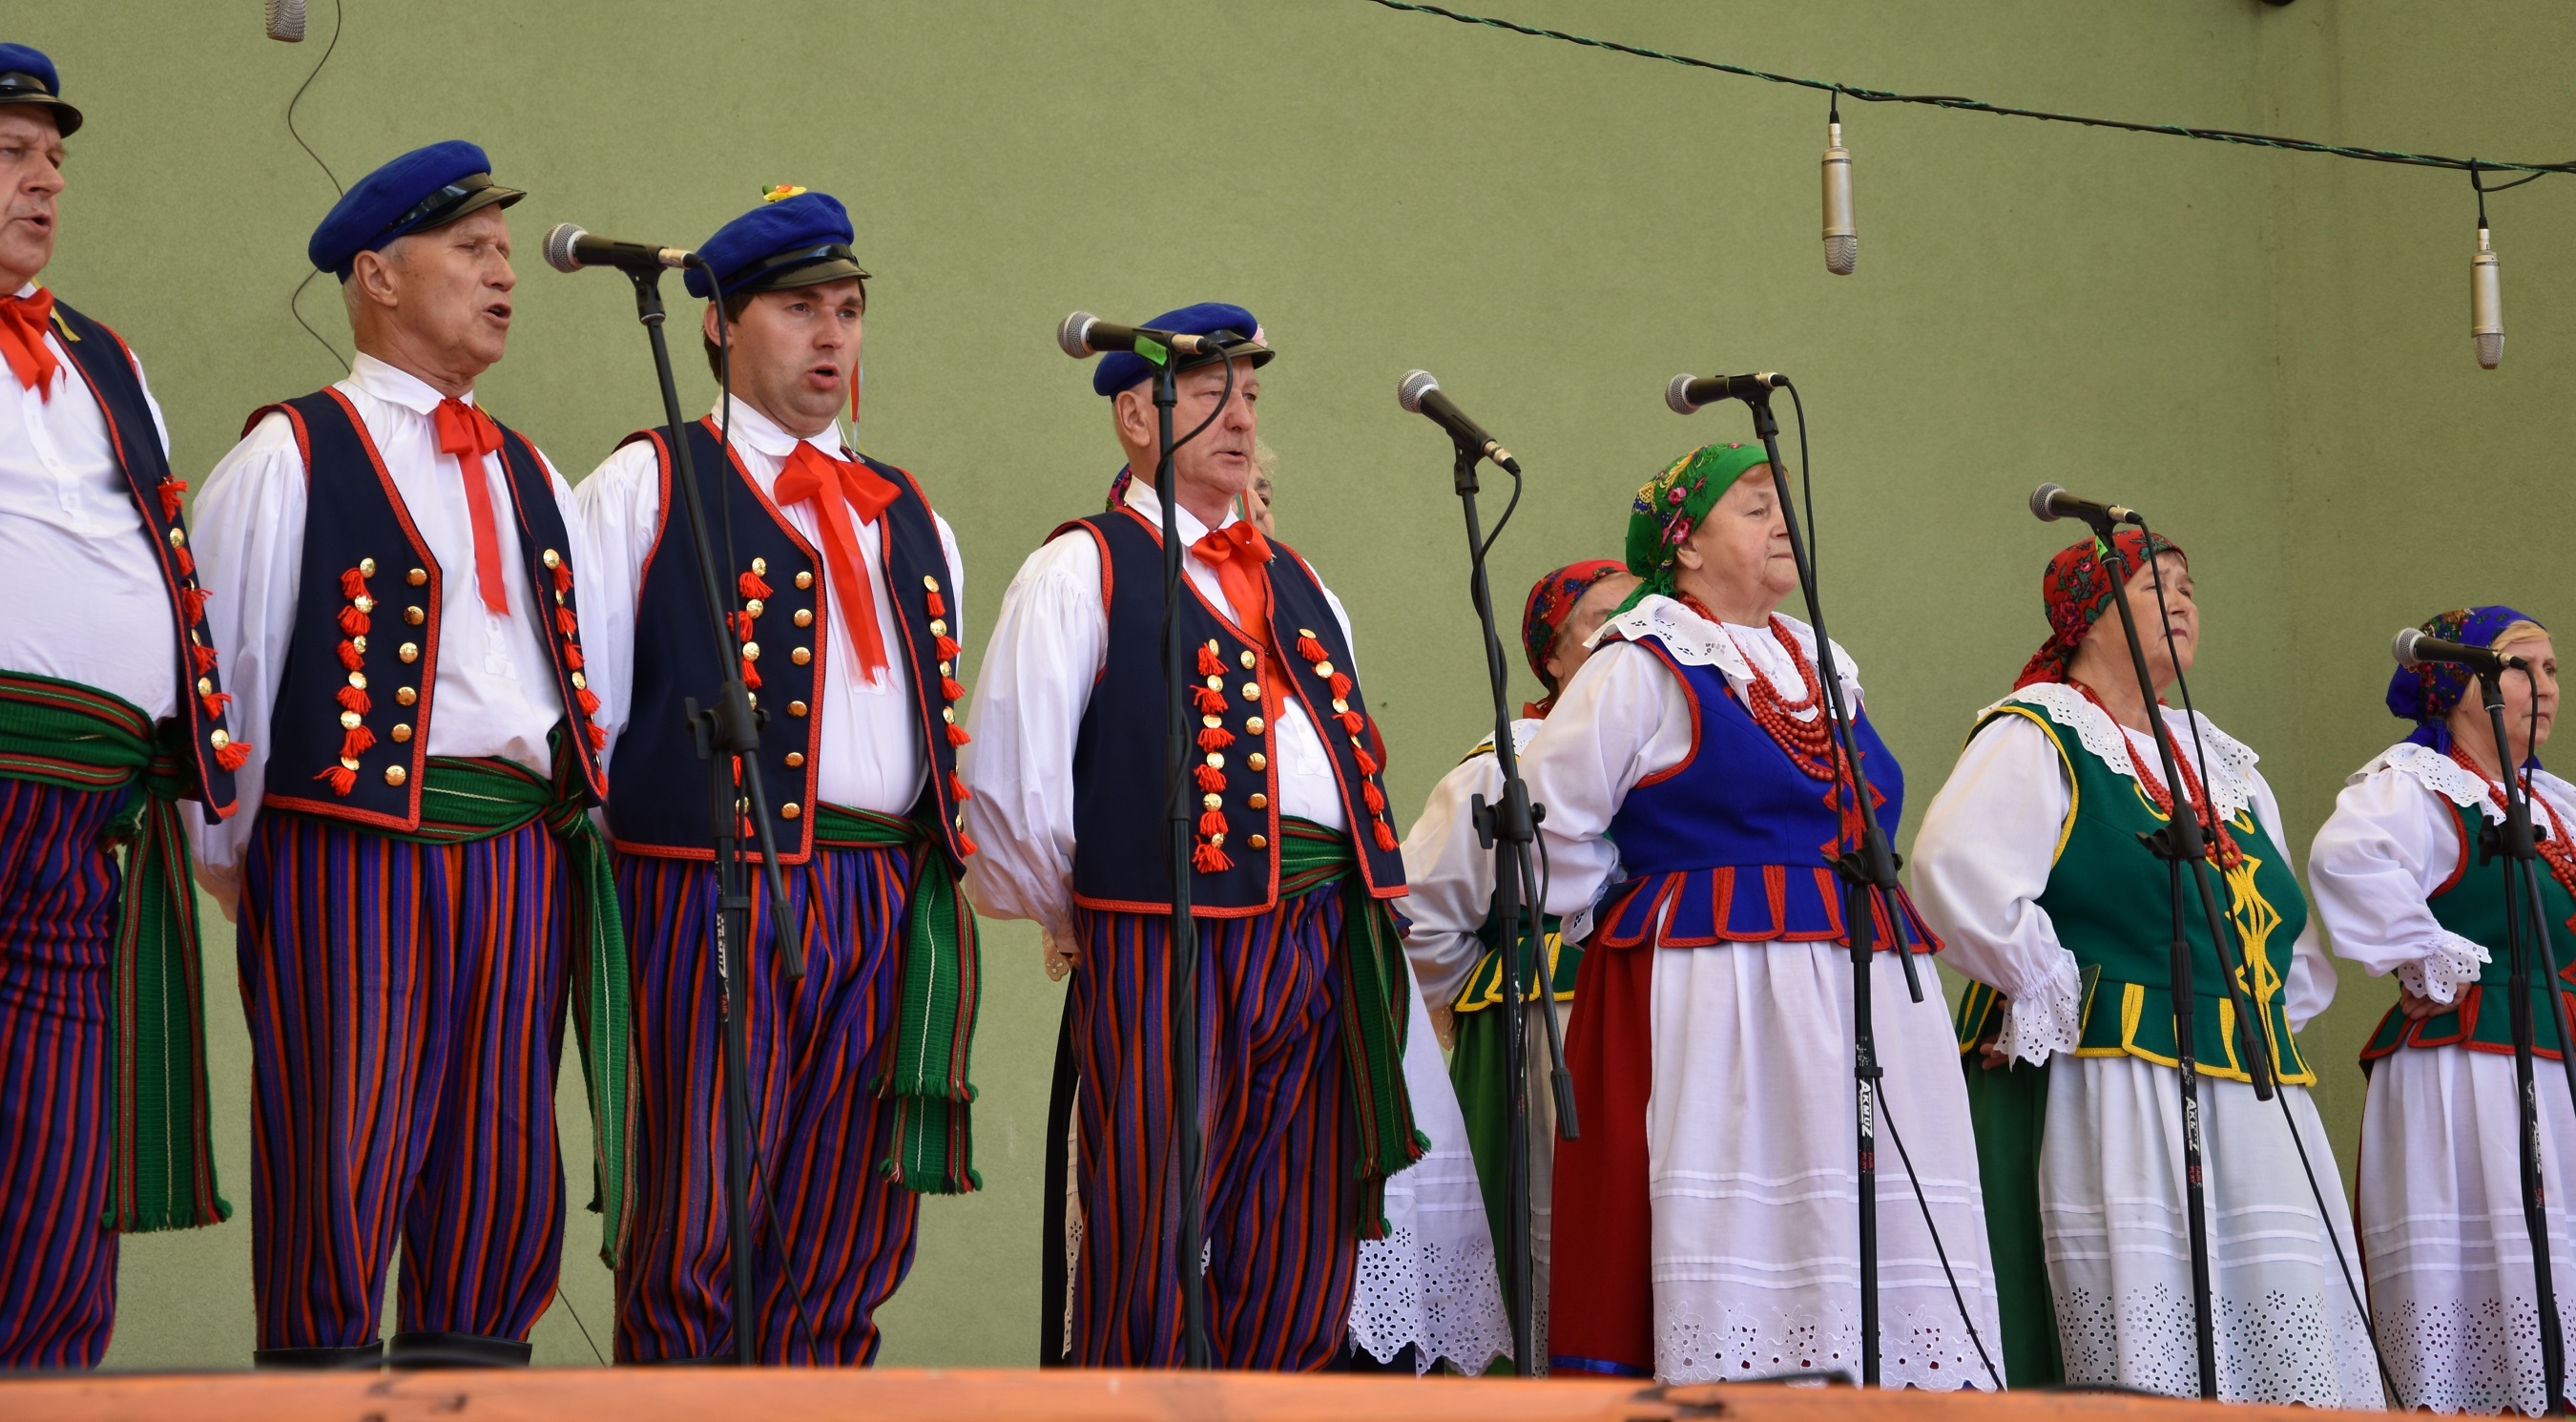 Zespół Folklorystyczny Rogozanki z Rogoźnika (gmina Bobrowniki) na estradzie w Brennej. Fot. Maria Lipok-Bierwiaczonek, 2018.